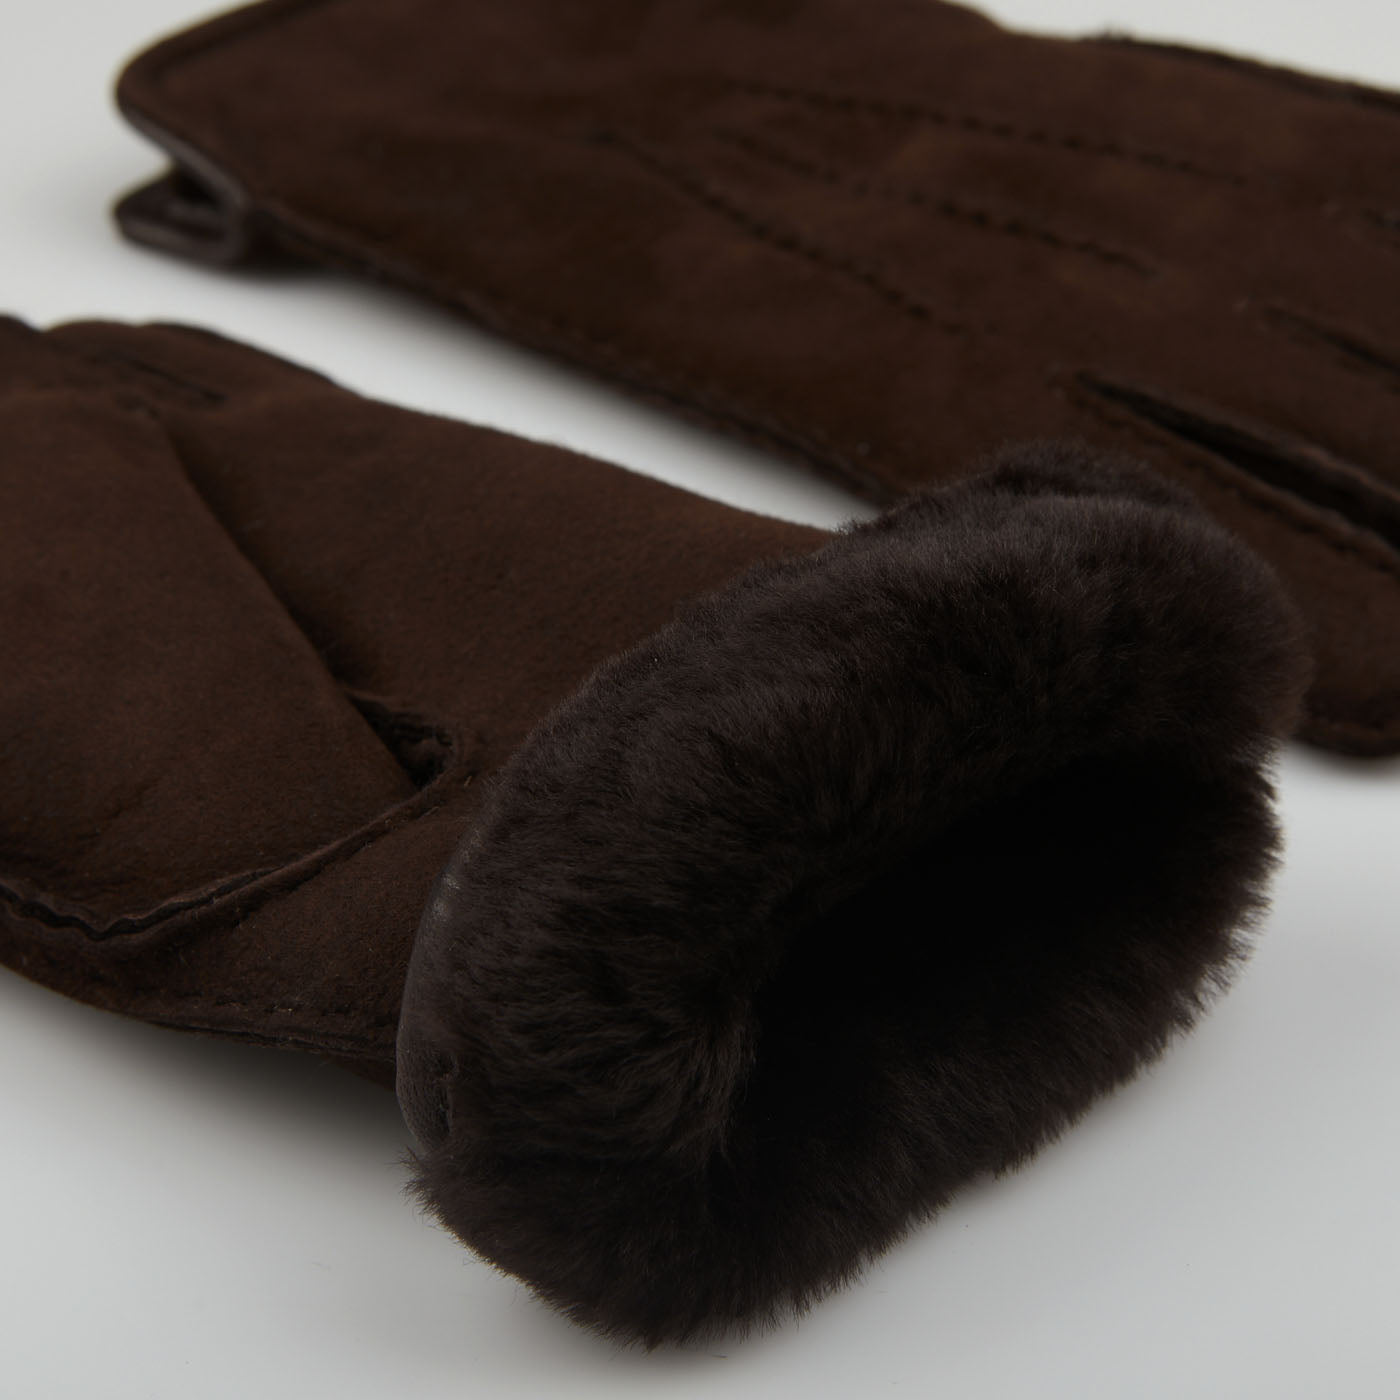 Werner Christ | Dark – Wool Baltzar Brown Gloves Lined Leather Suede